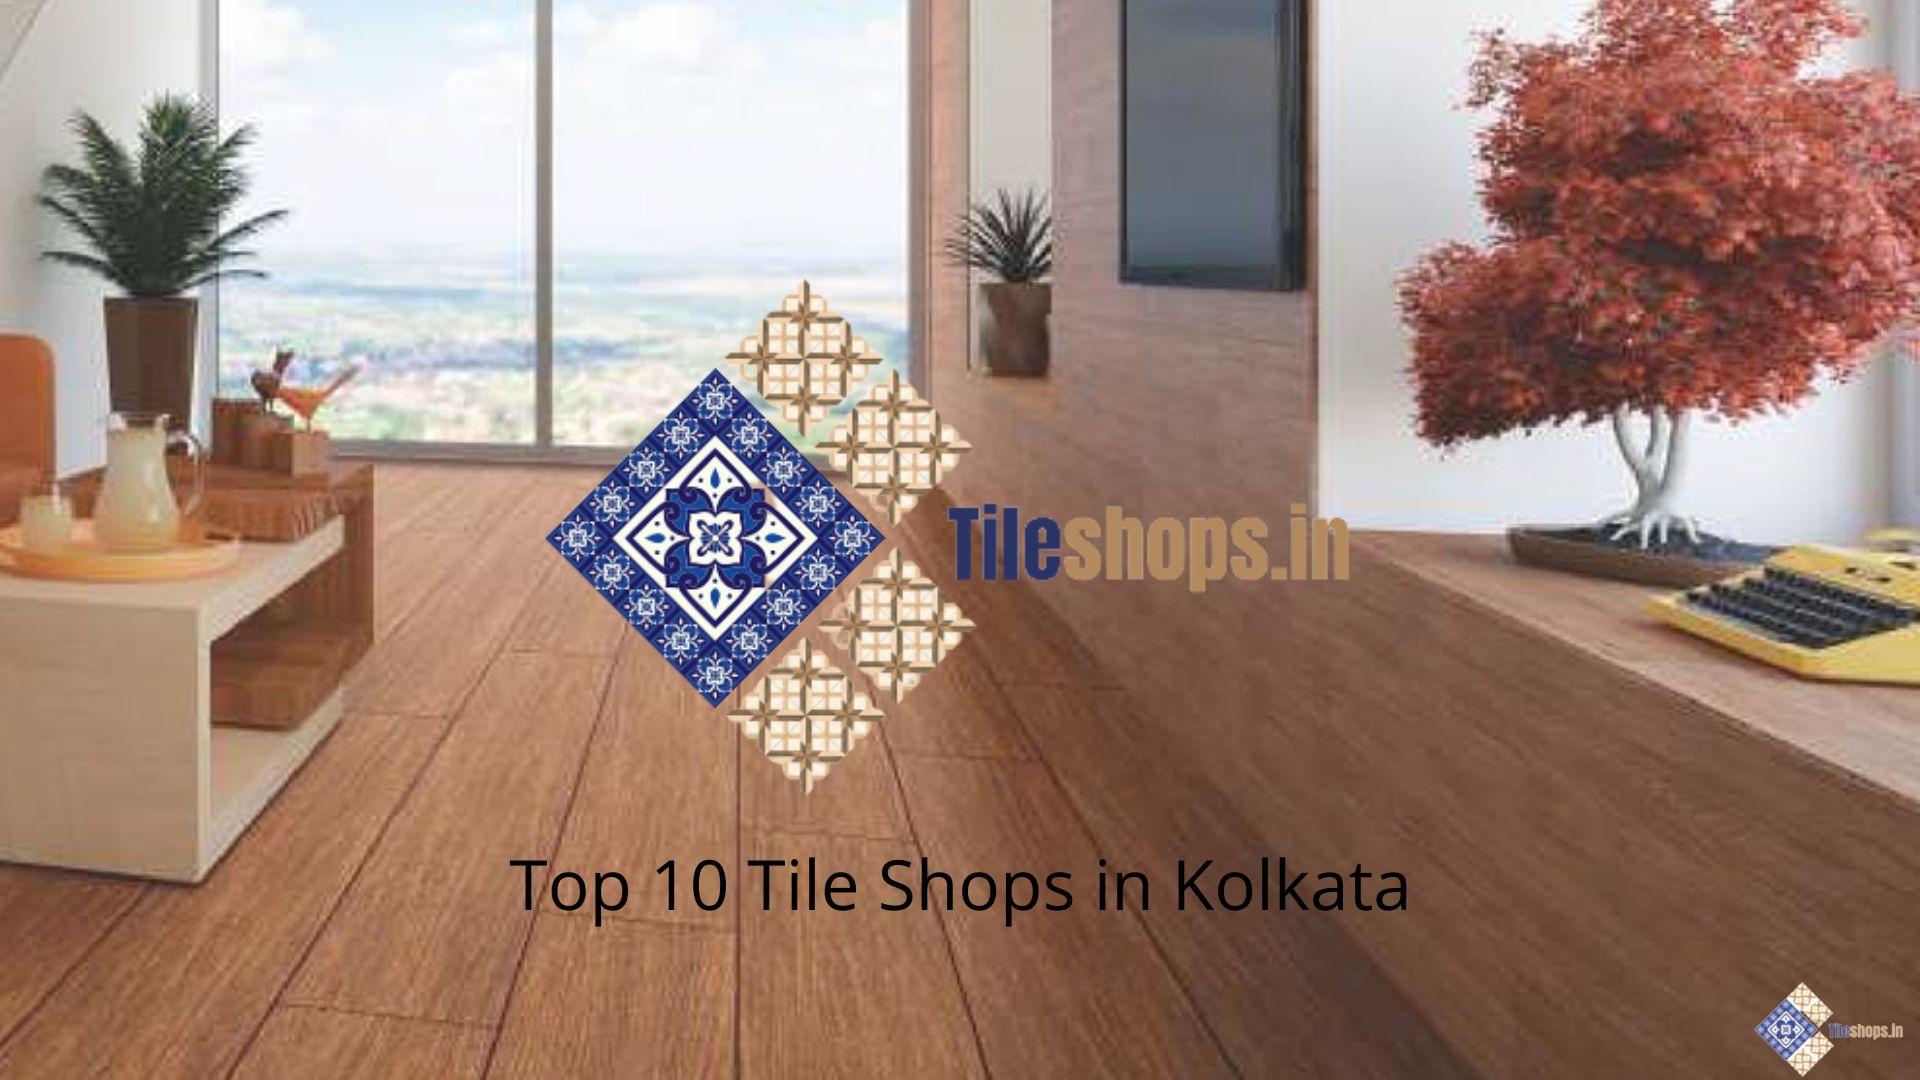 Top 10 Tile Shops in Kolkata